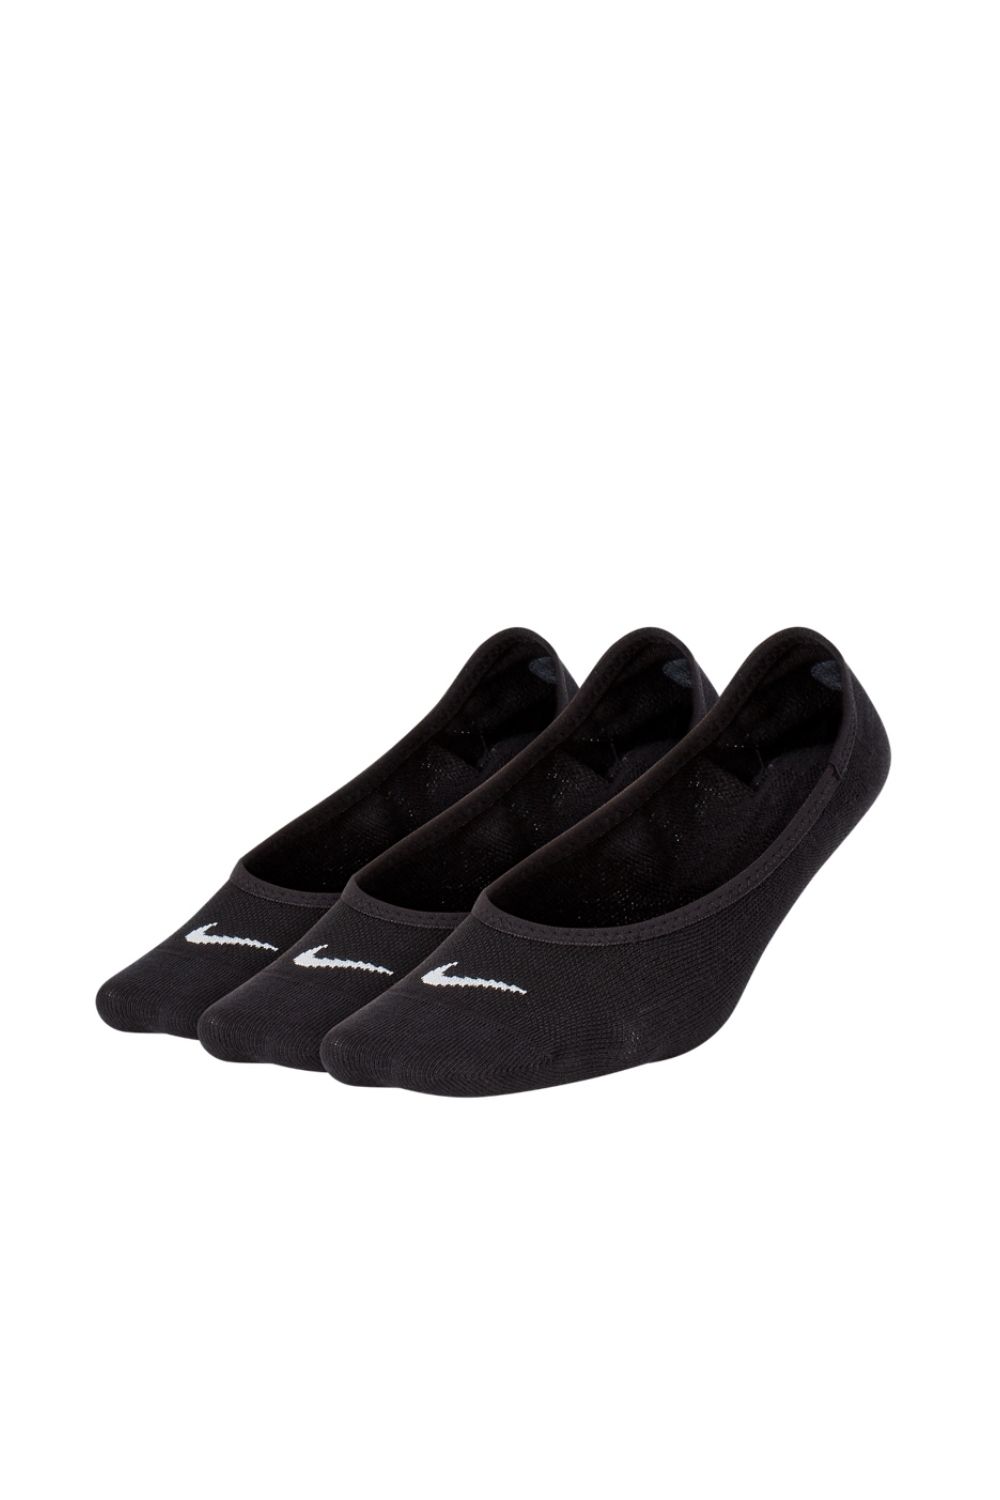 NIKE – Σετ γυναικειες καλτσες 3 τμχ Nike Lightweight Footie Training Sock μαυρες